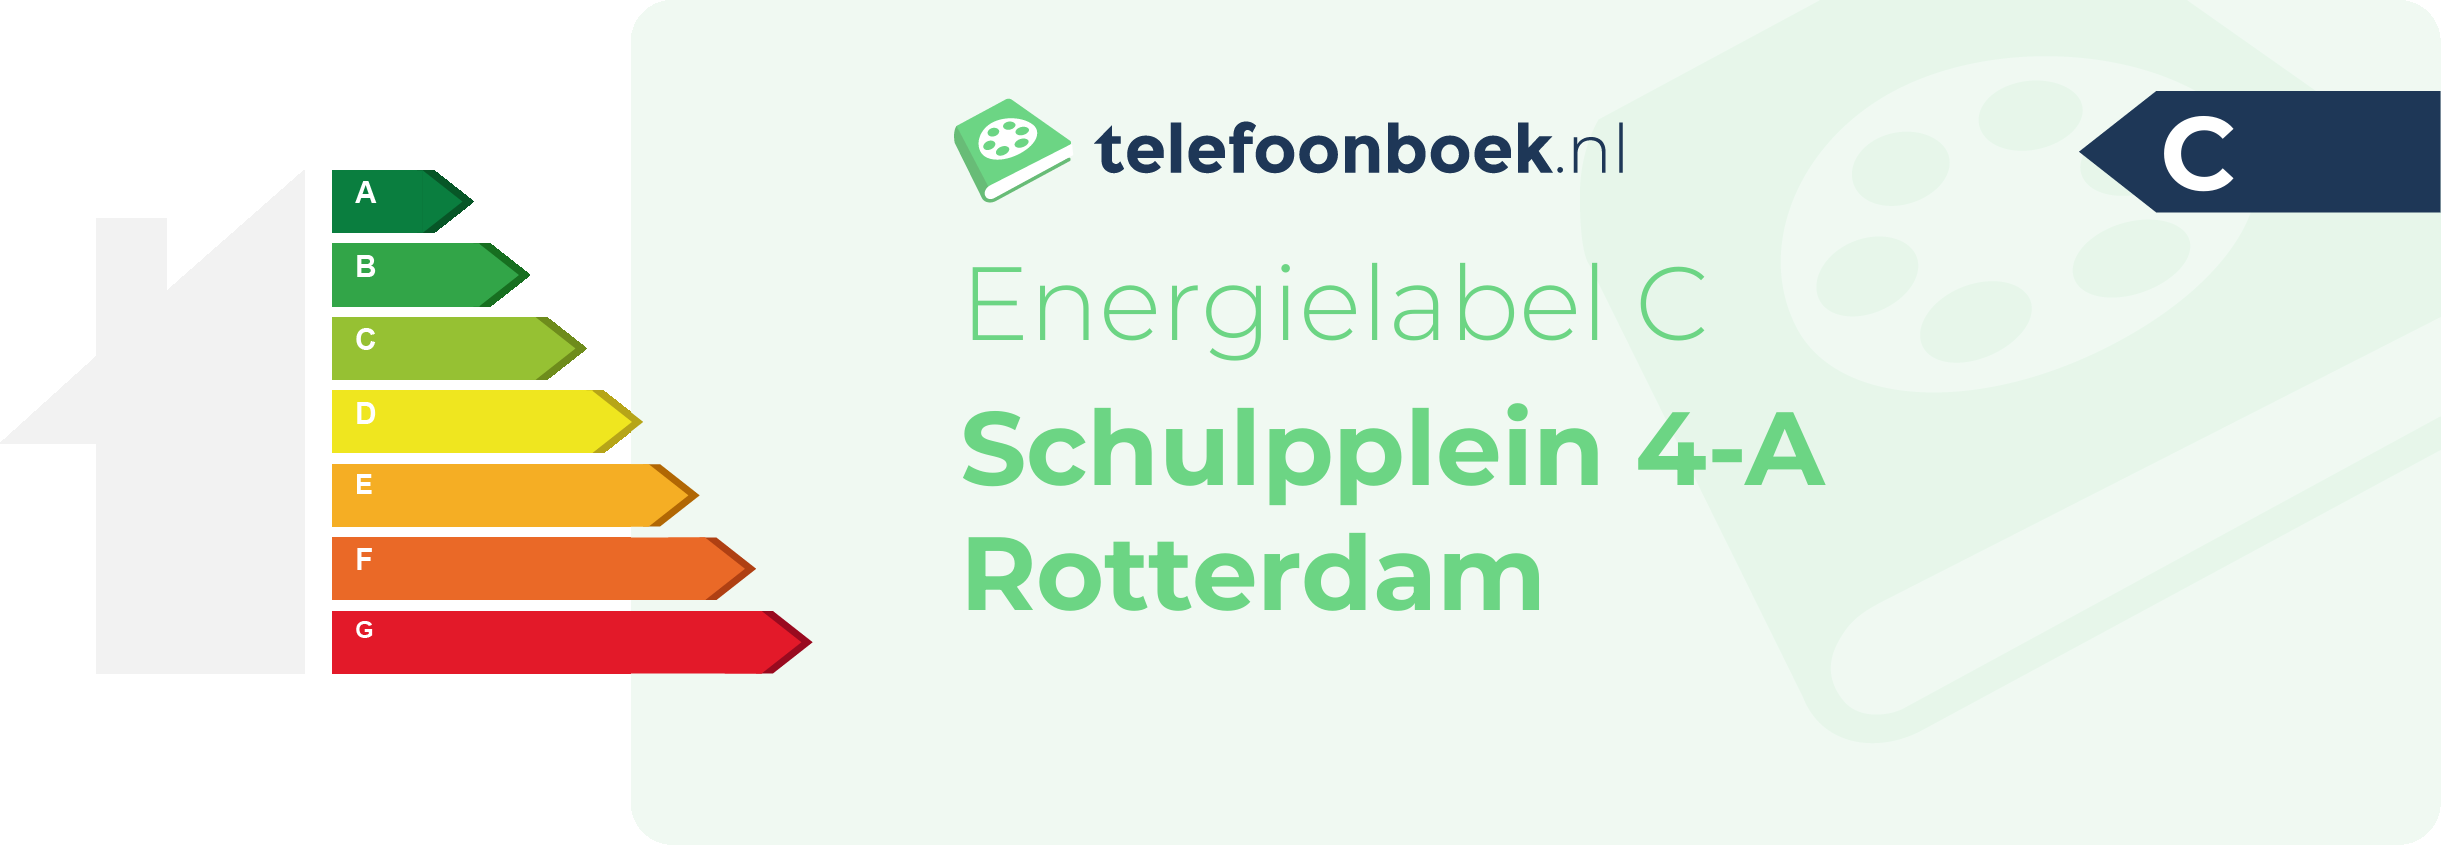 Energielabel Schulpplein 4-A Rotterdam